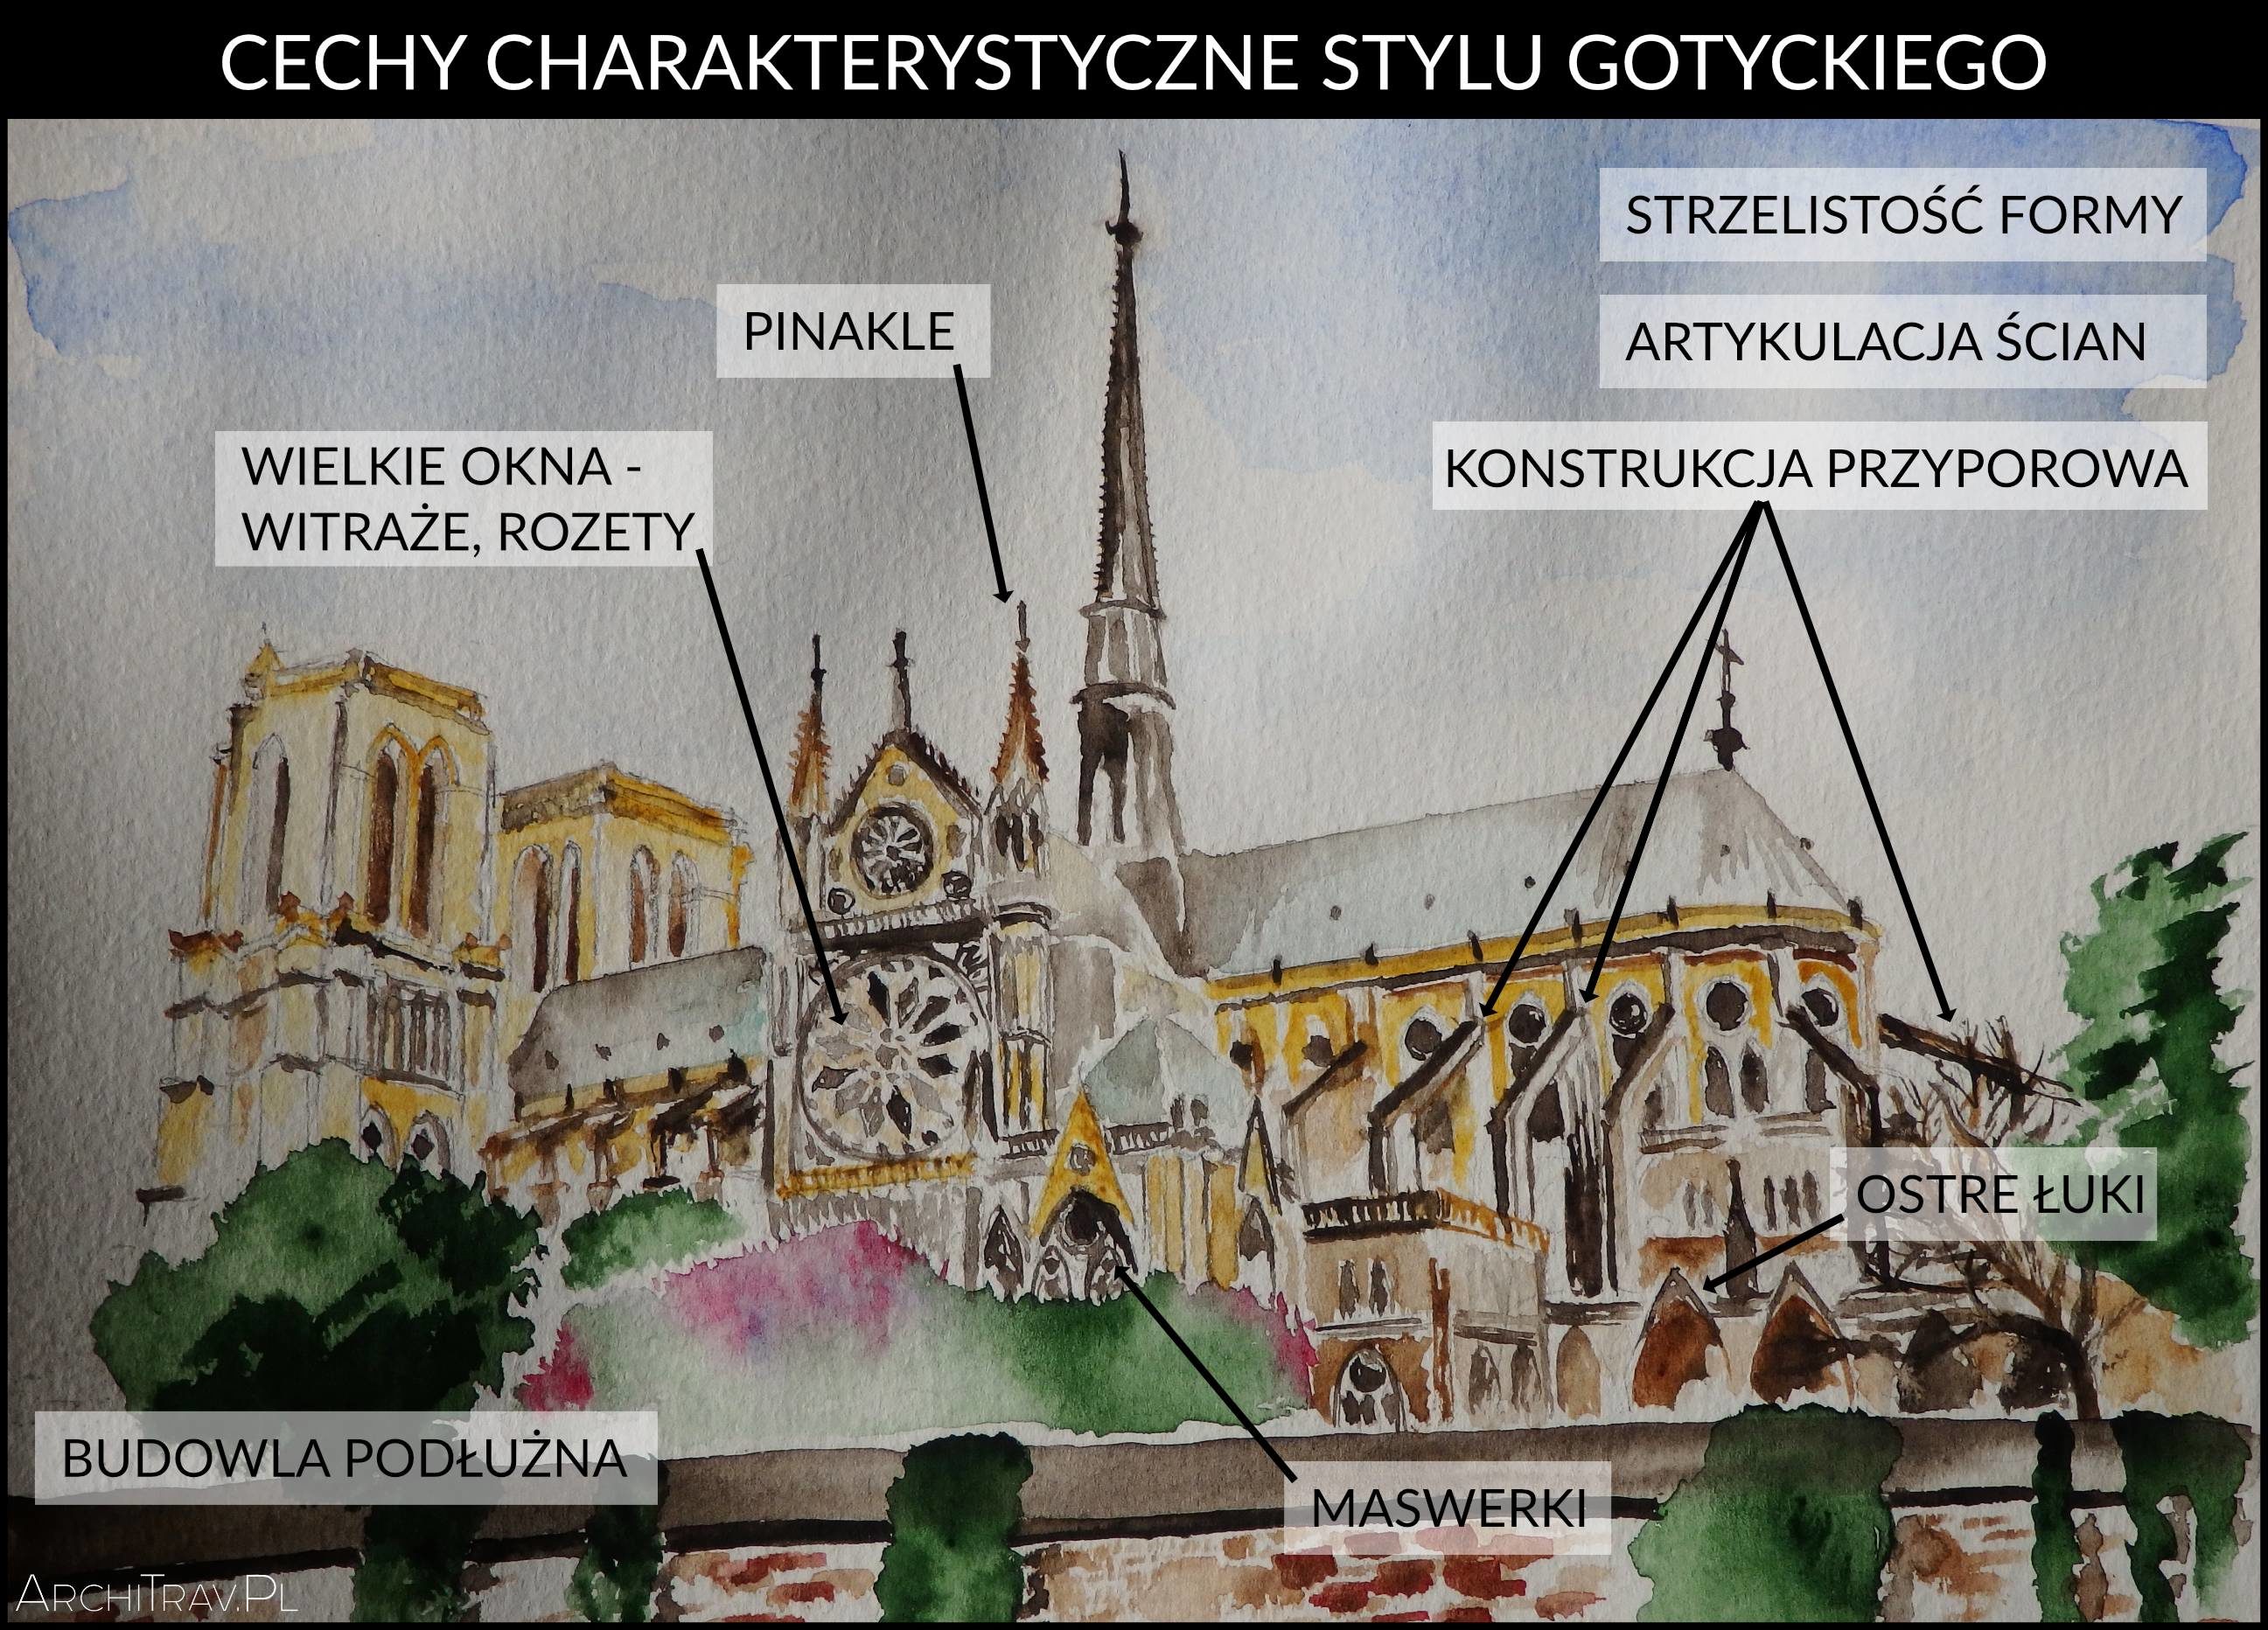 Historia architektury: styl gotycki | ArchiTrav